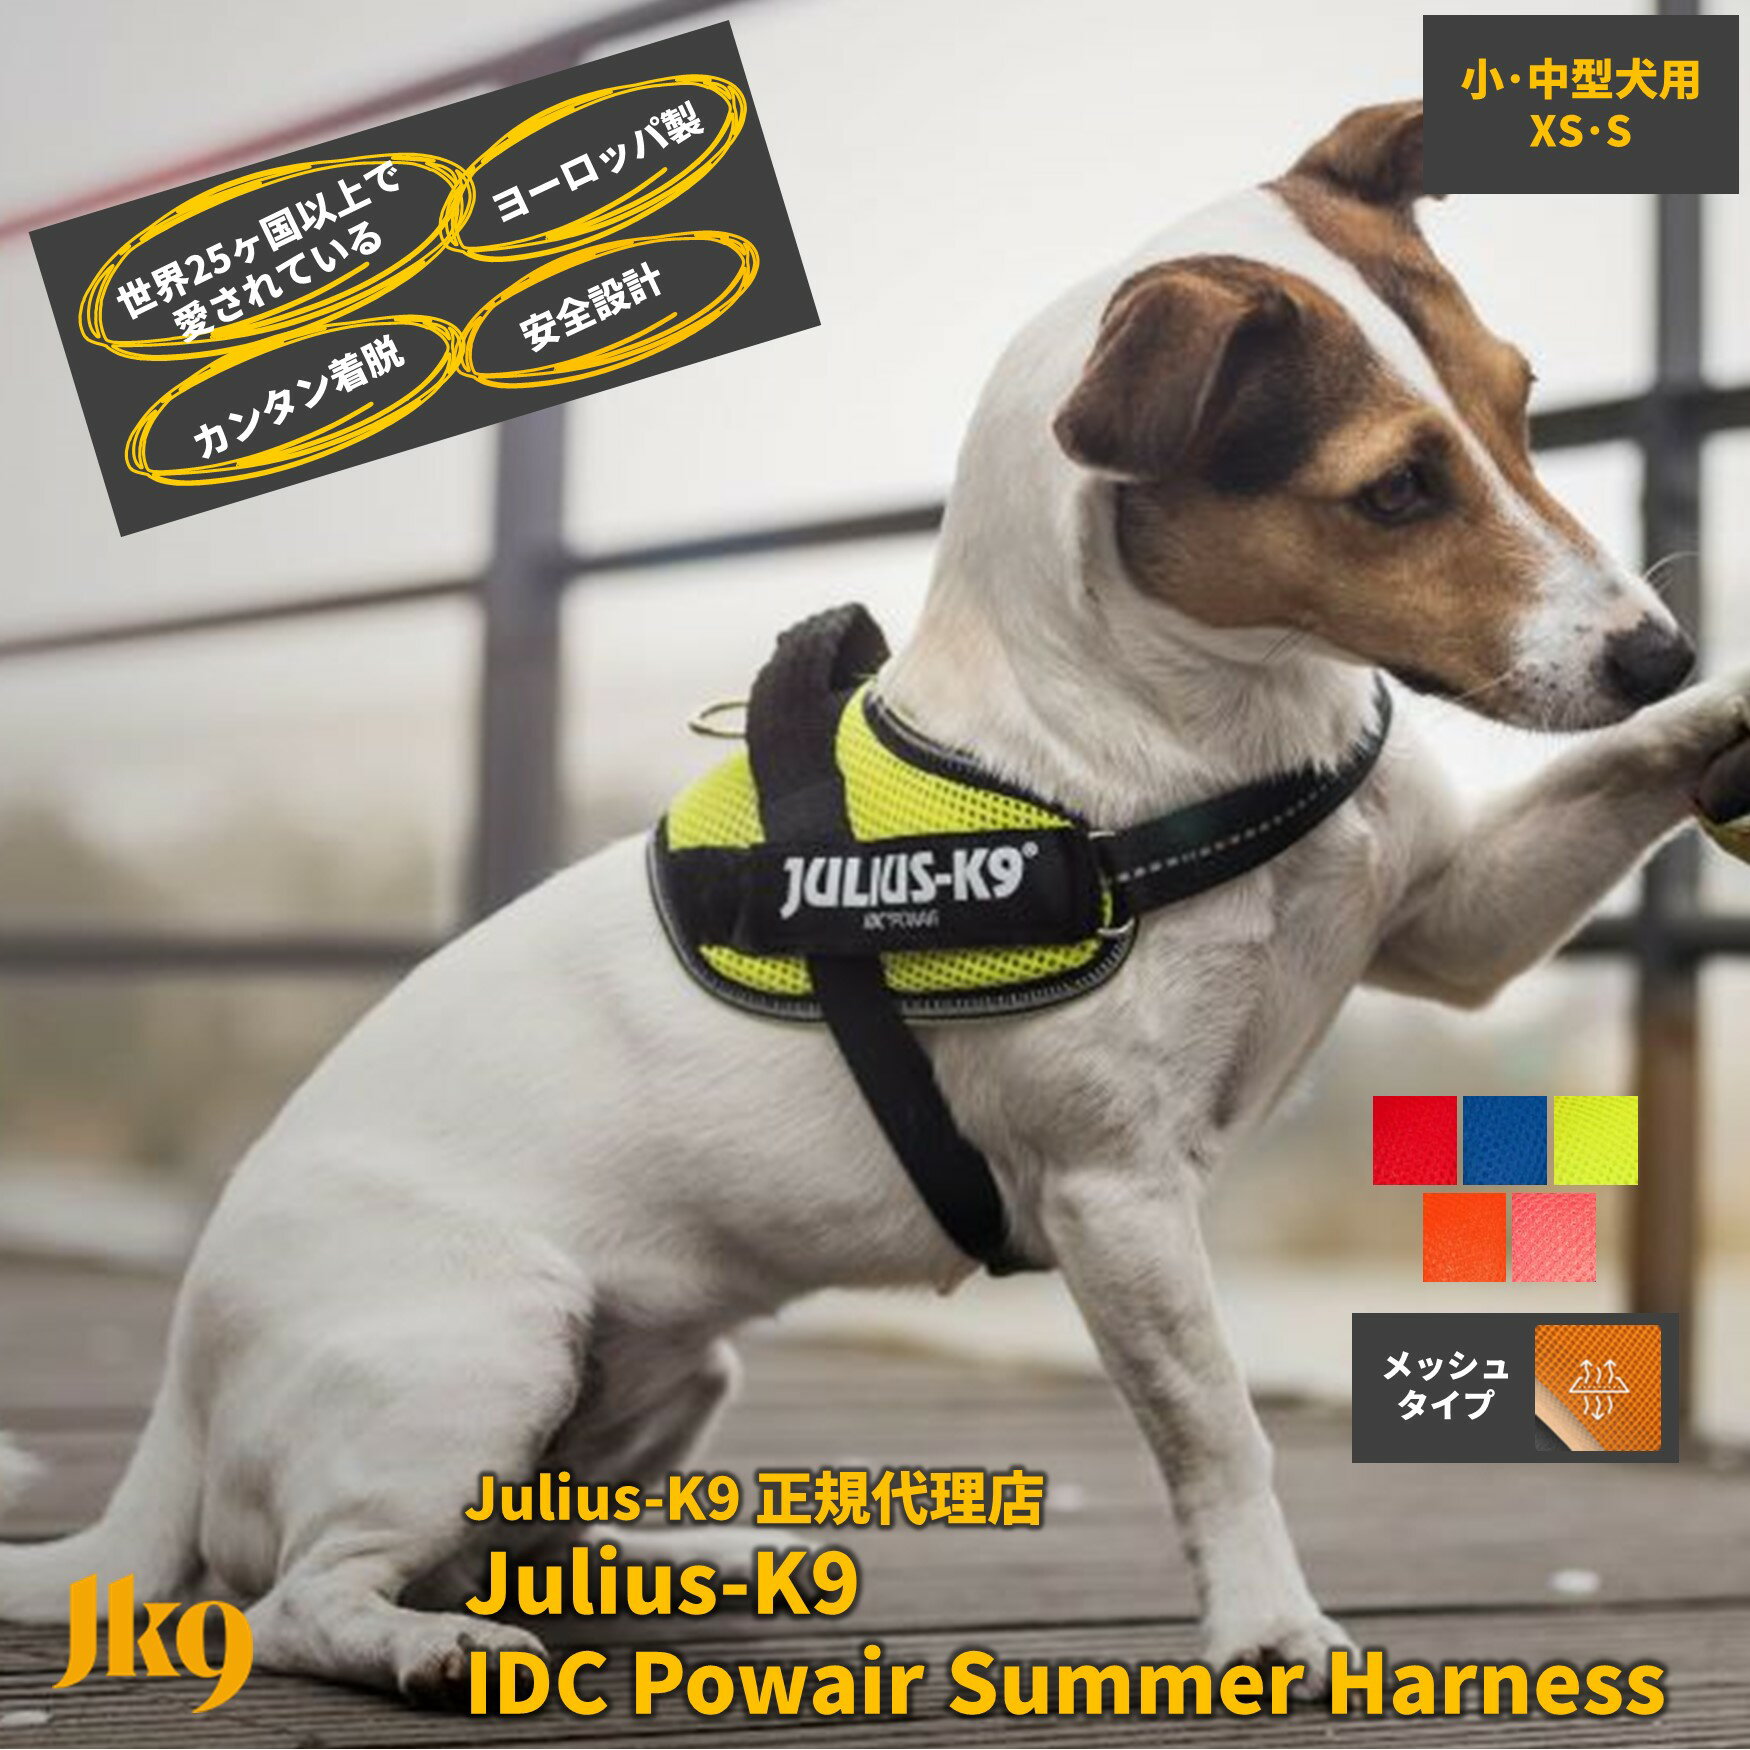 2021新商品 XS S IDCパワーサマーハーネス メッシュハーネス Julius-K9 ユリウスケーナイン 中型犬 犬用 胴輪 胸囲40〜67cm 